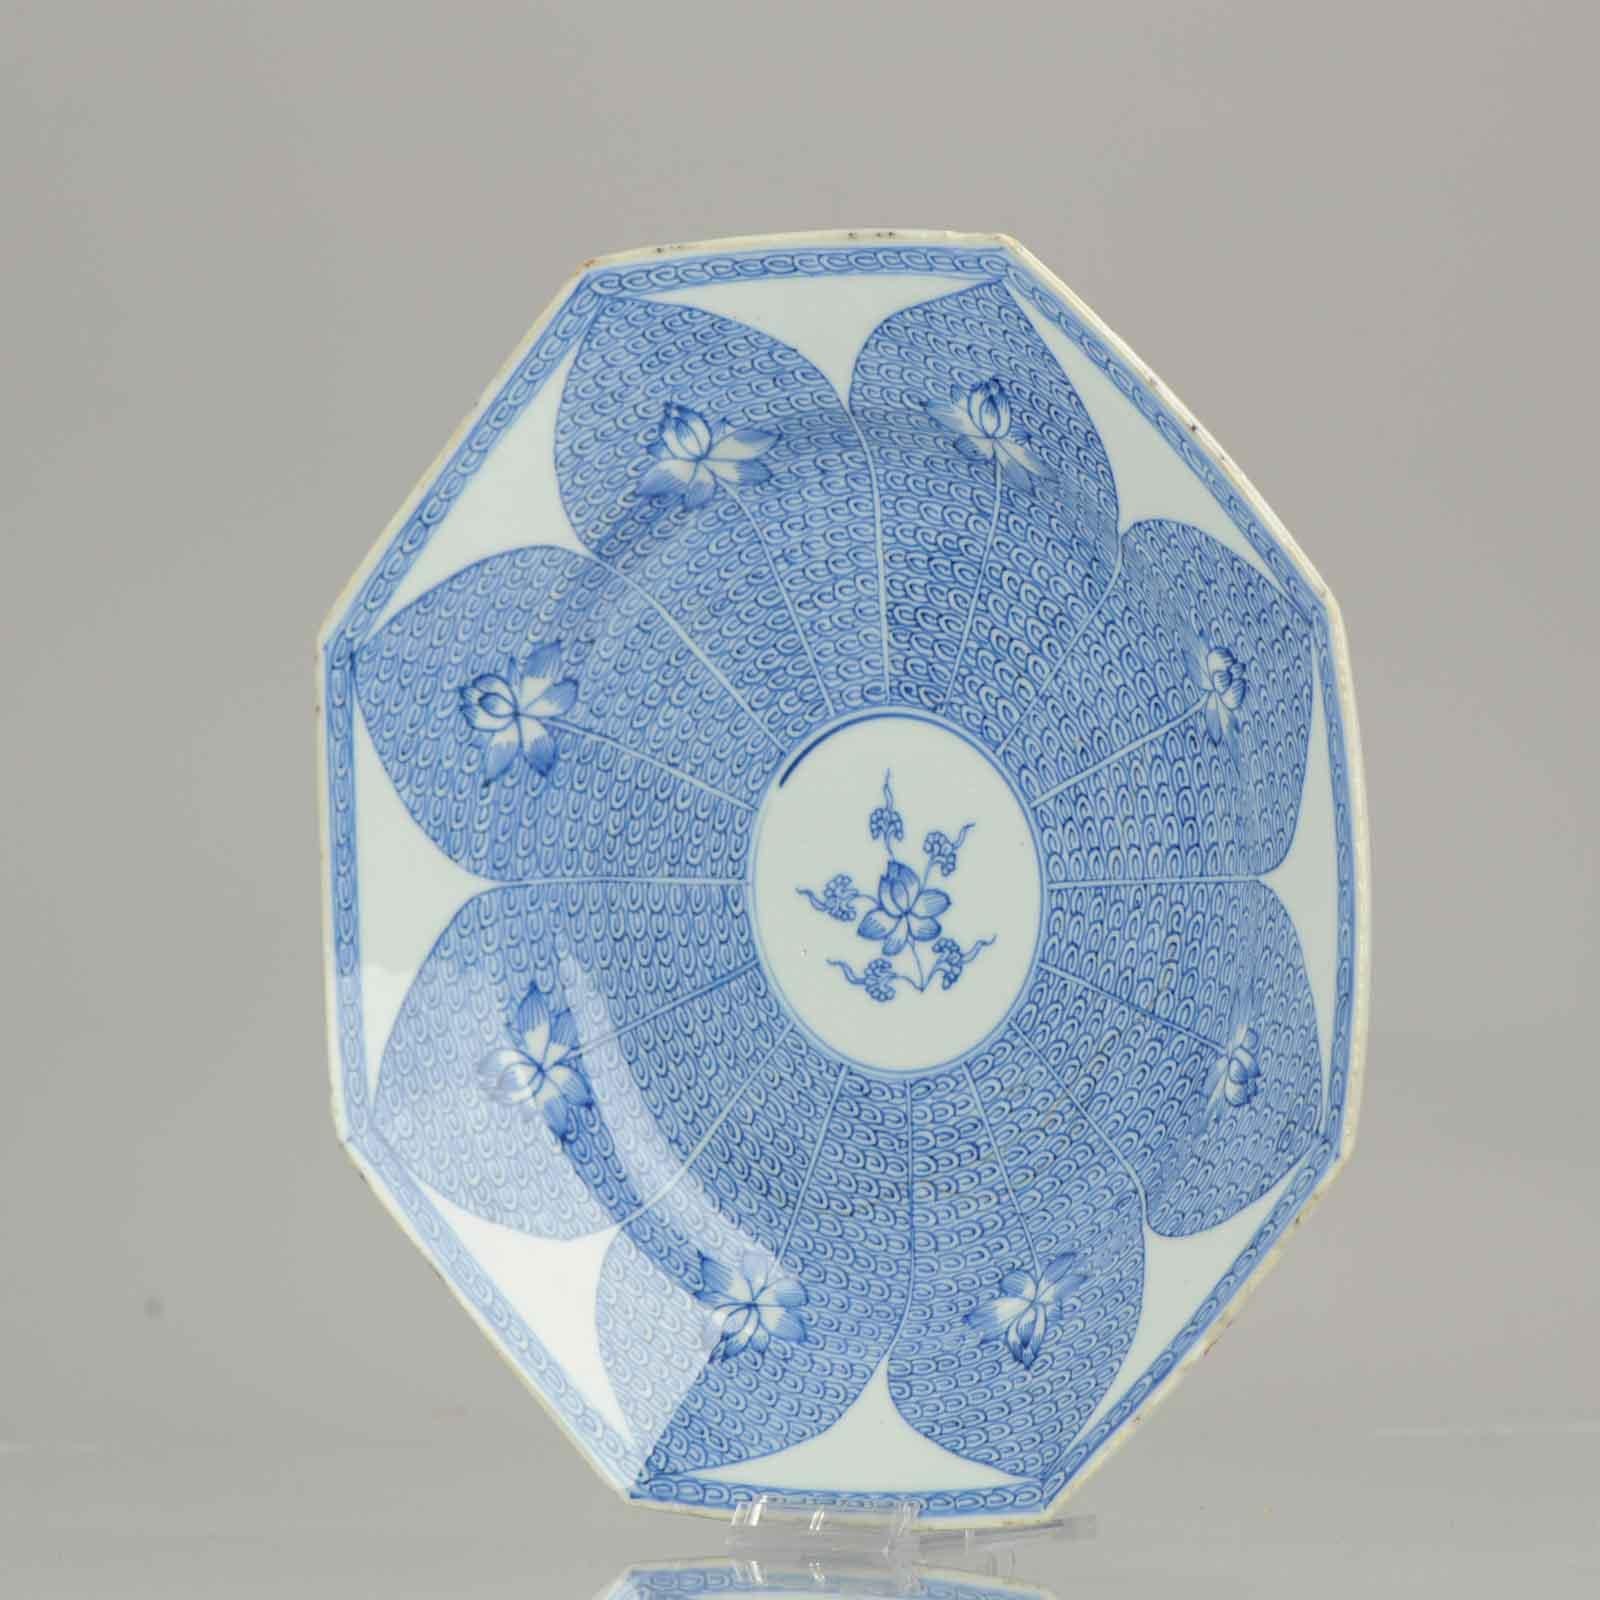 Blauer und weißer, achteckiger Exportteller, in der Mitte verziert mit einer stilisierten Lotusblumenpracht, umrahmt von Lotusblütenblättern, die Lotusblumen auf einem Rollwerkgrund einschließen.

Dieses Muster wurde in chinesischem